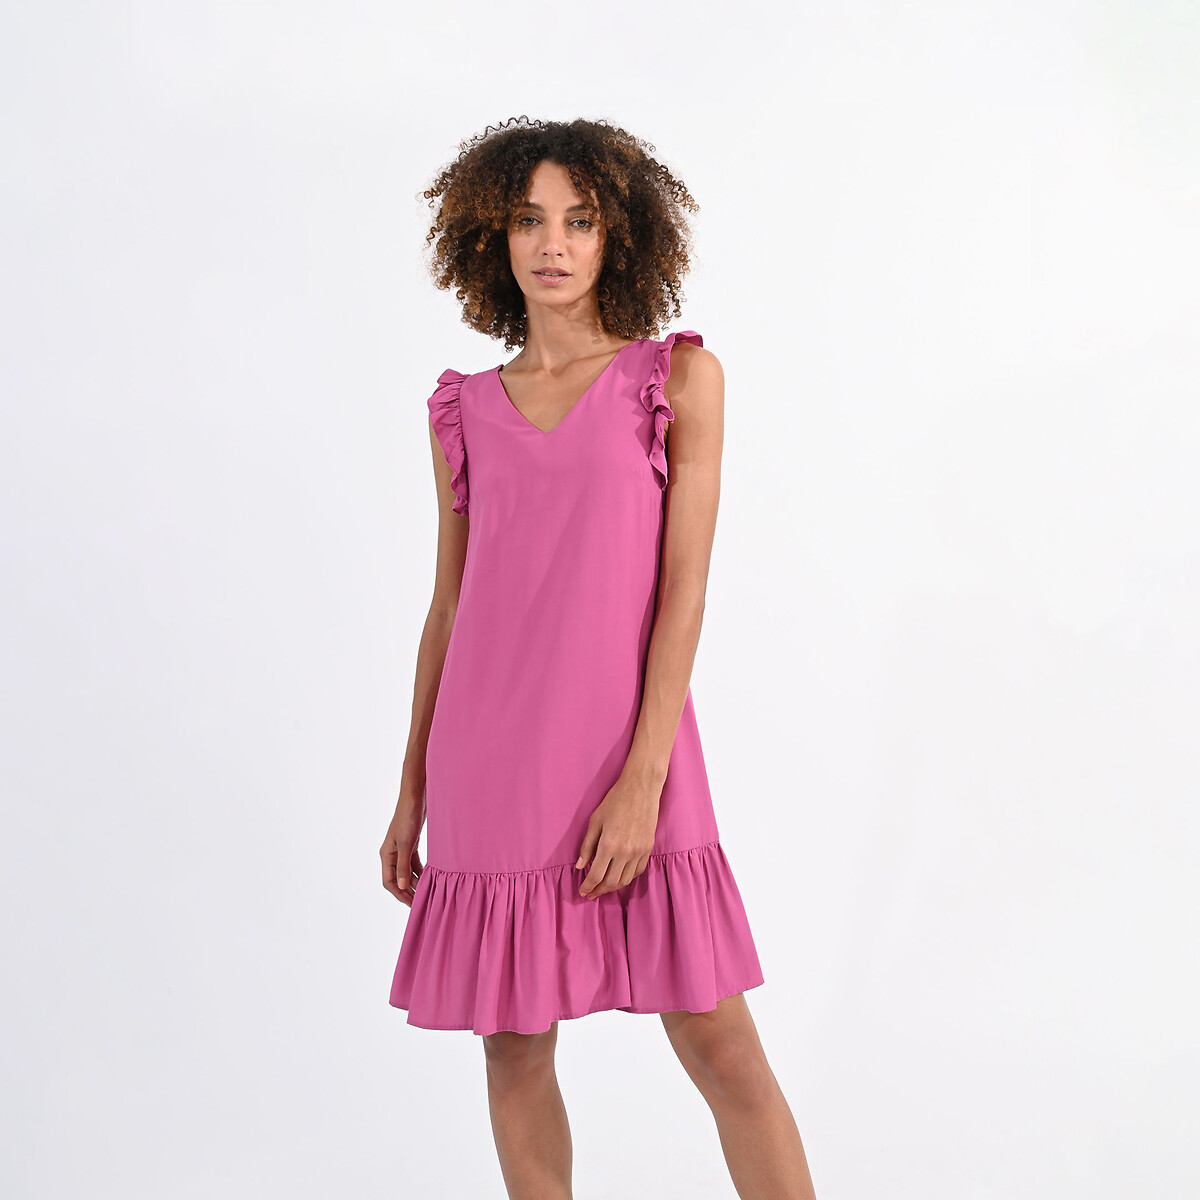 Платье короткое с воланами M розовый платье laredoute платье короткое на бретелях с воланами m белый